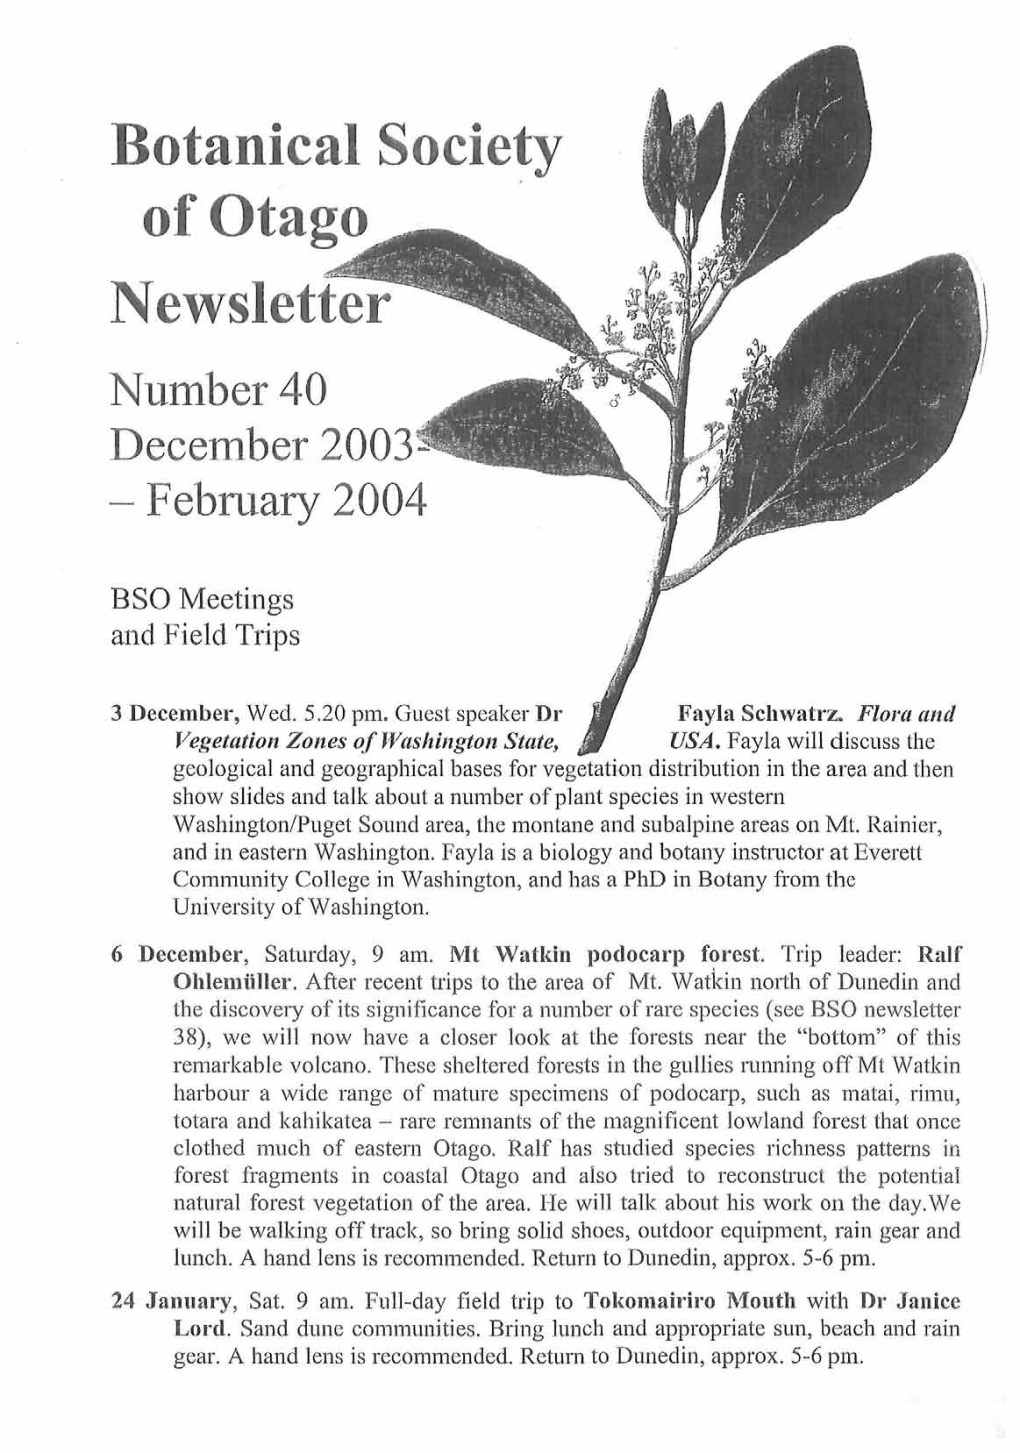 Botanical Society of Otago Newsletter Number 40 December 2003 - February 2004